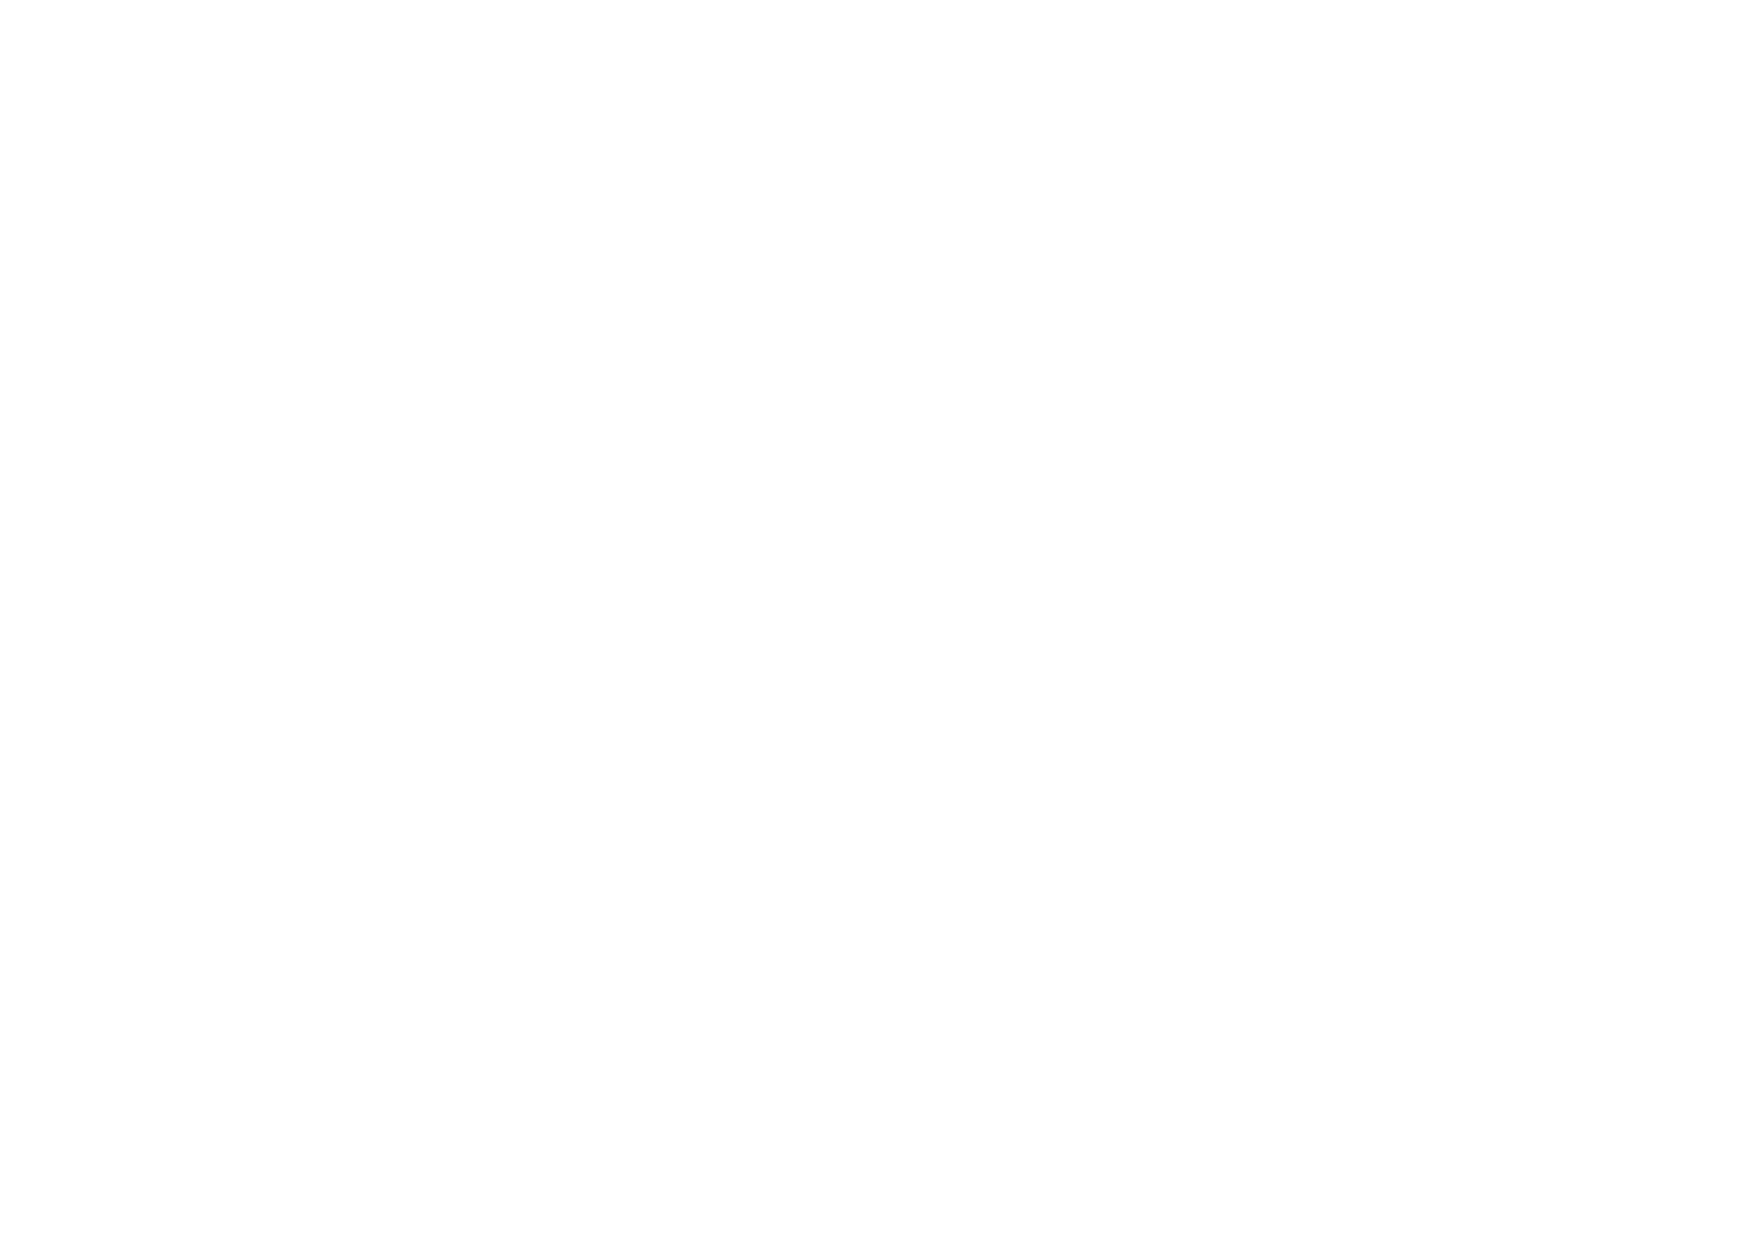 Logo del plato de ducha Superbath de Securibath